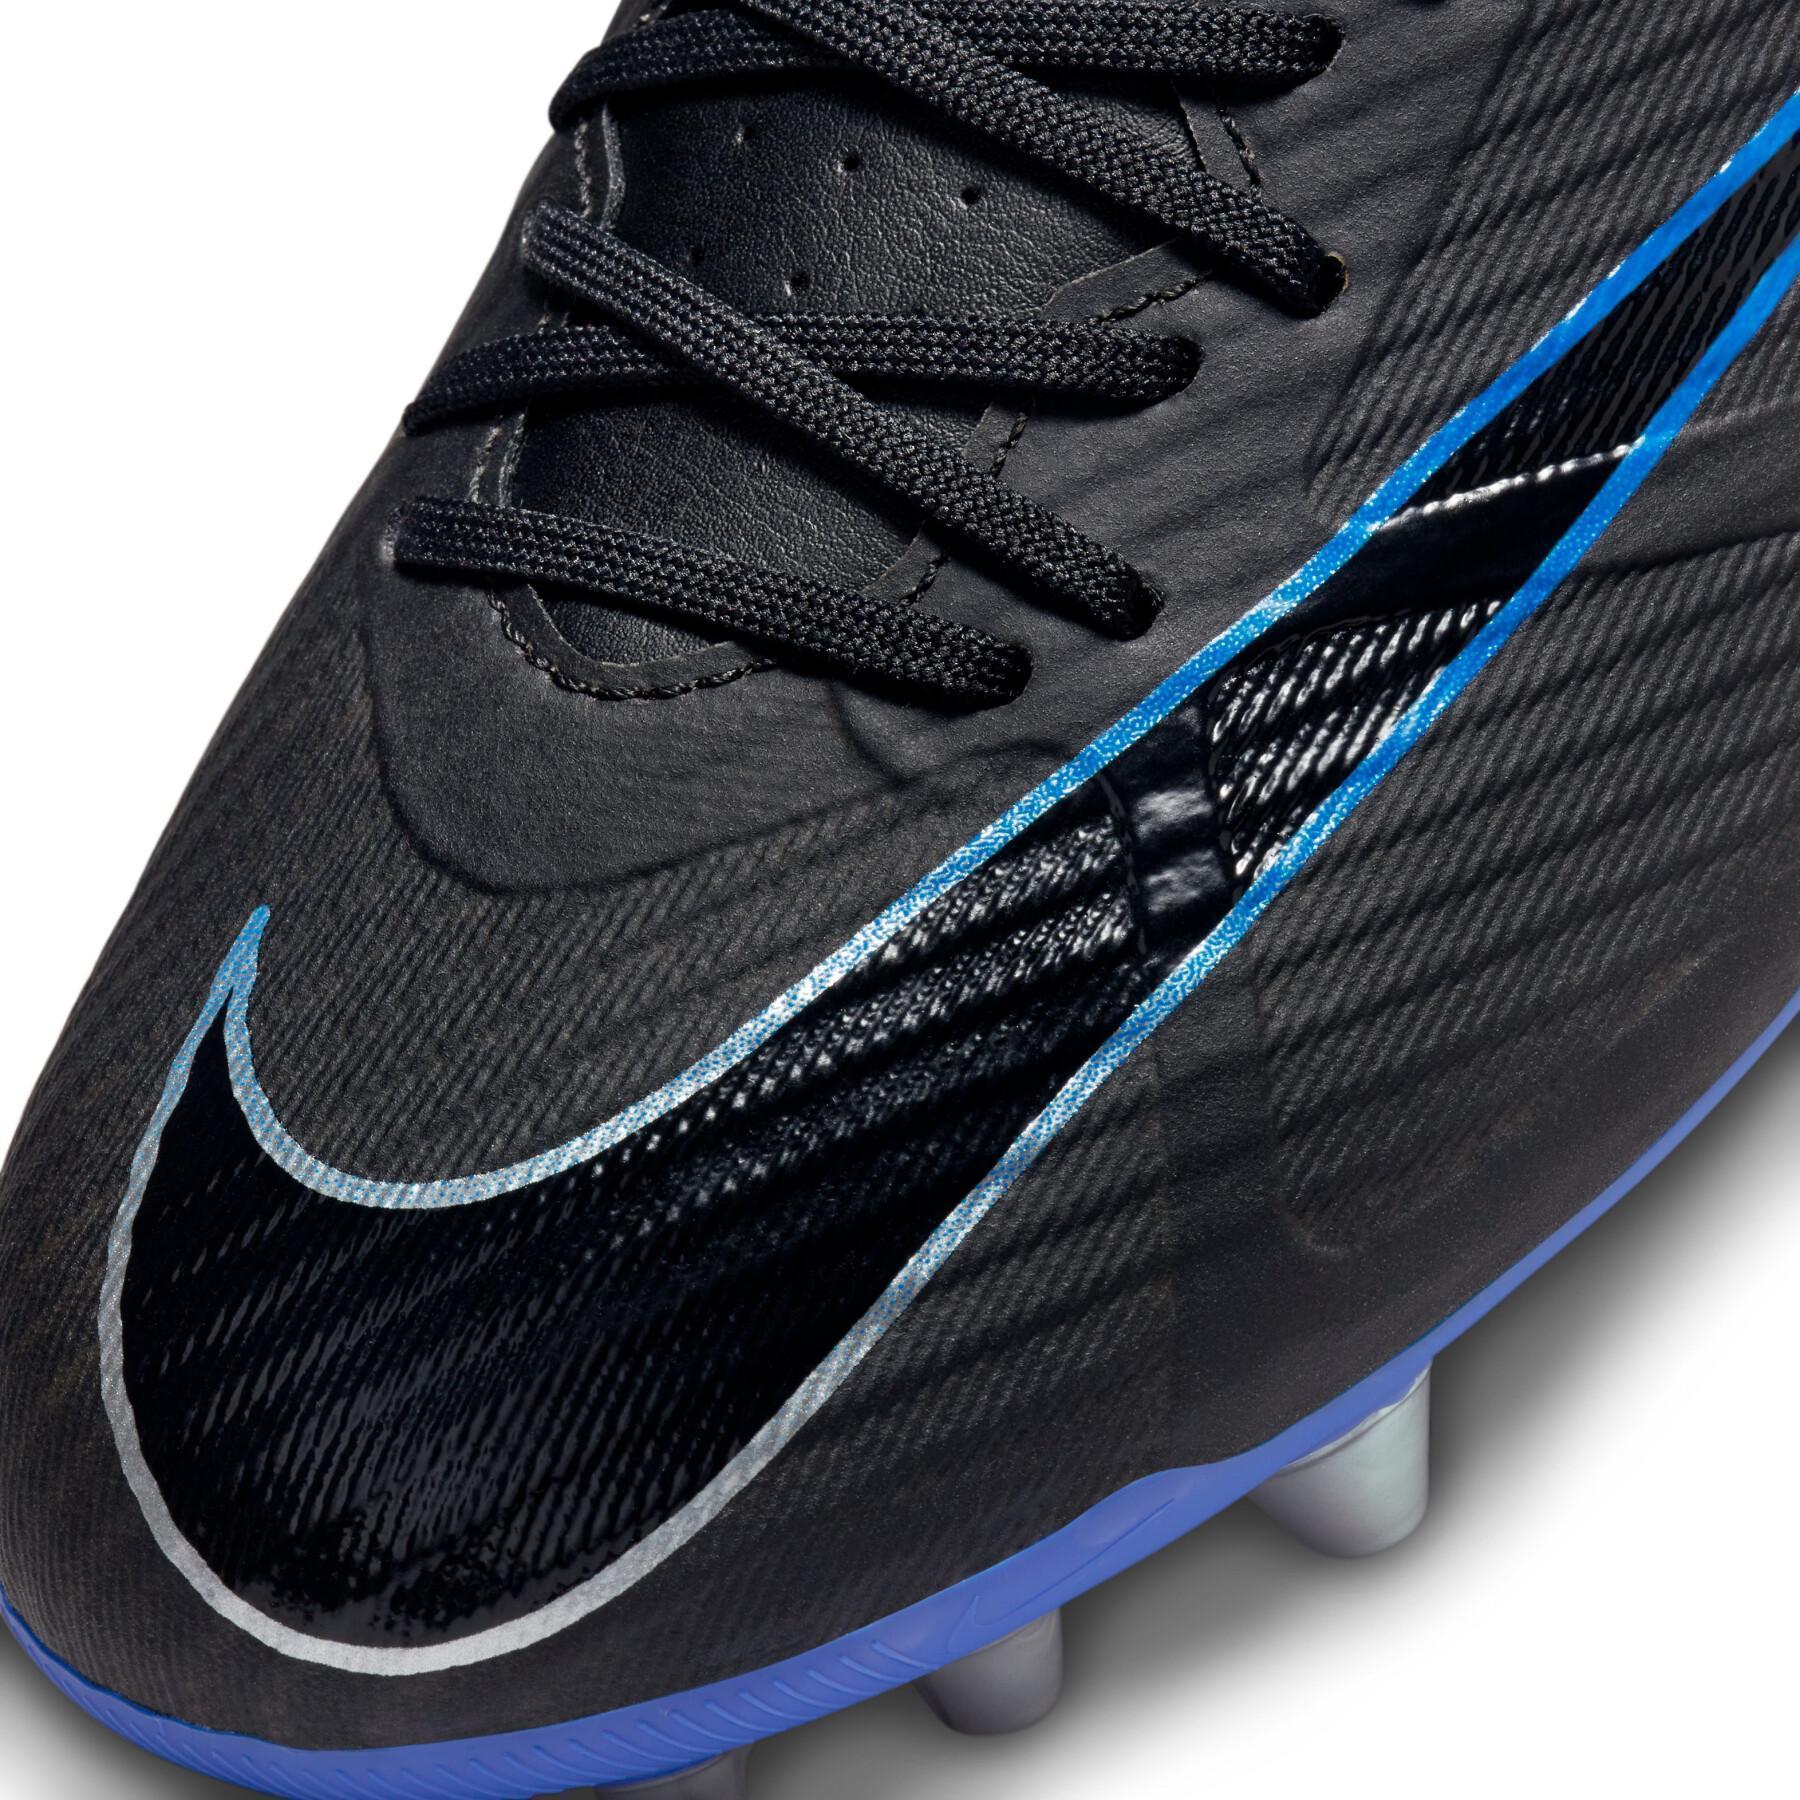 Sapatos de futebol para crianças Nike Mercurial Vapor 15 Academy AG - Shadow Pack